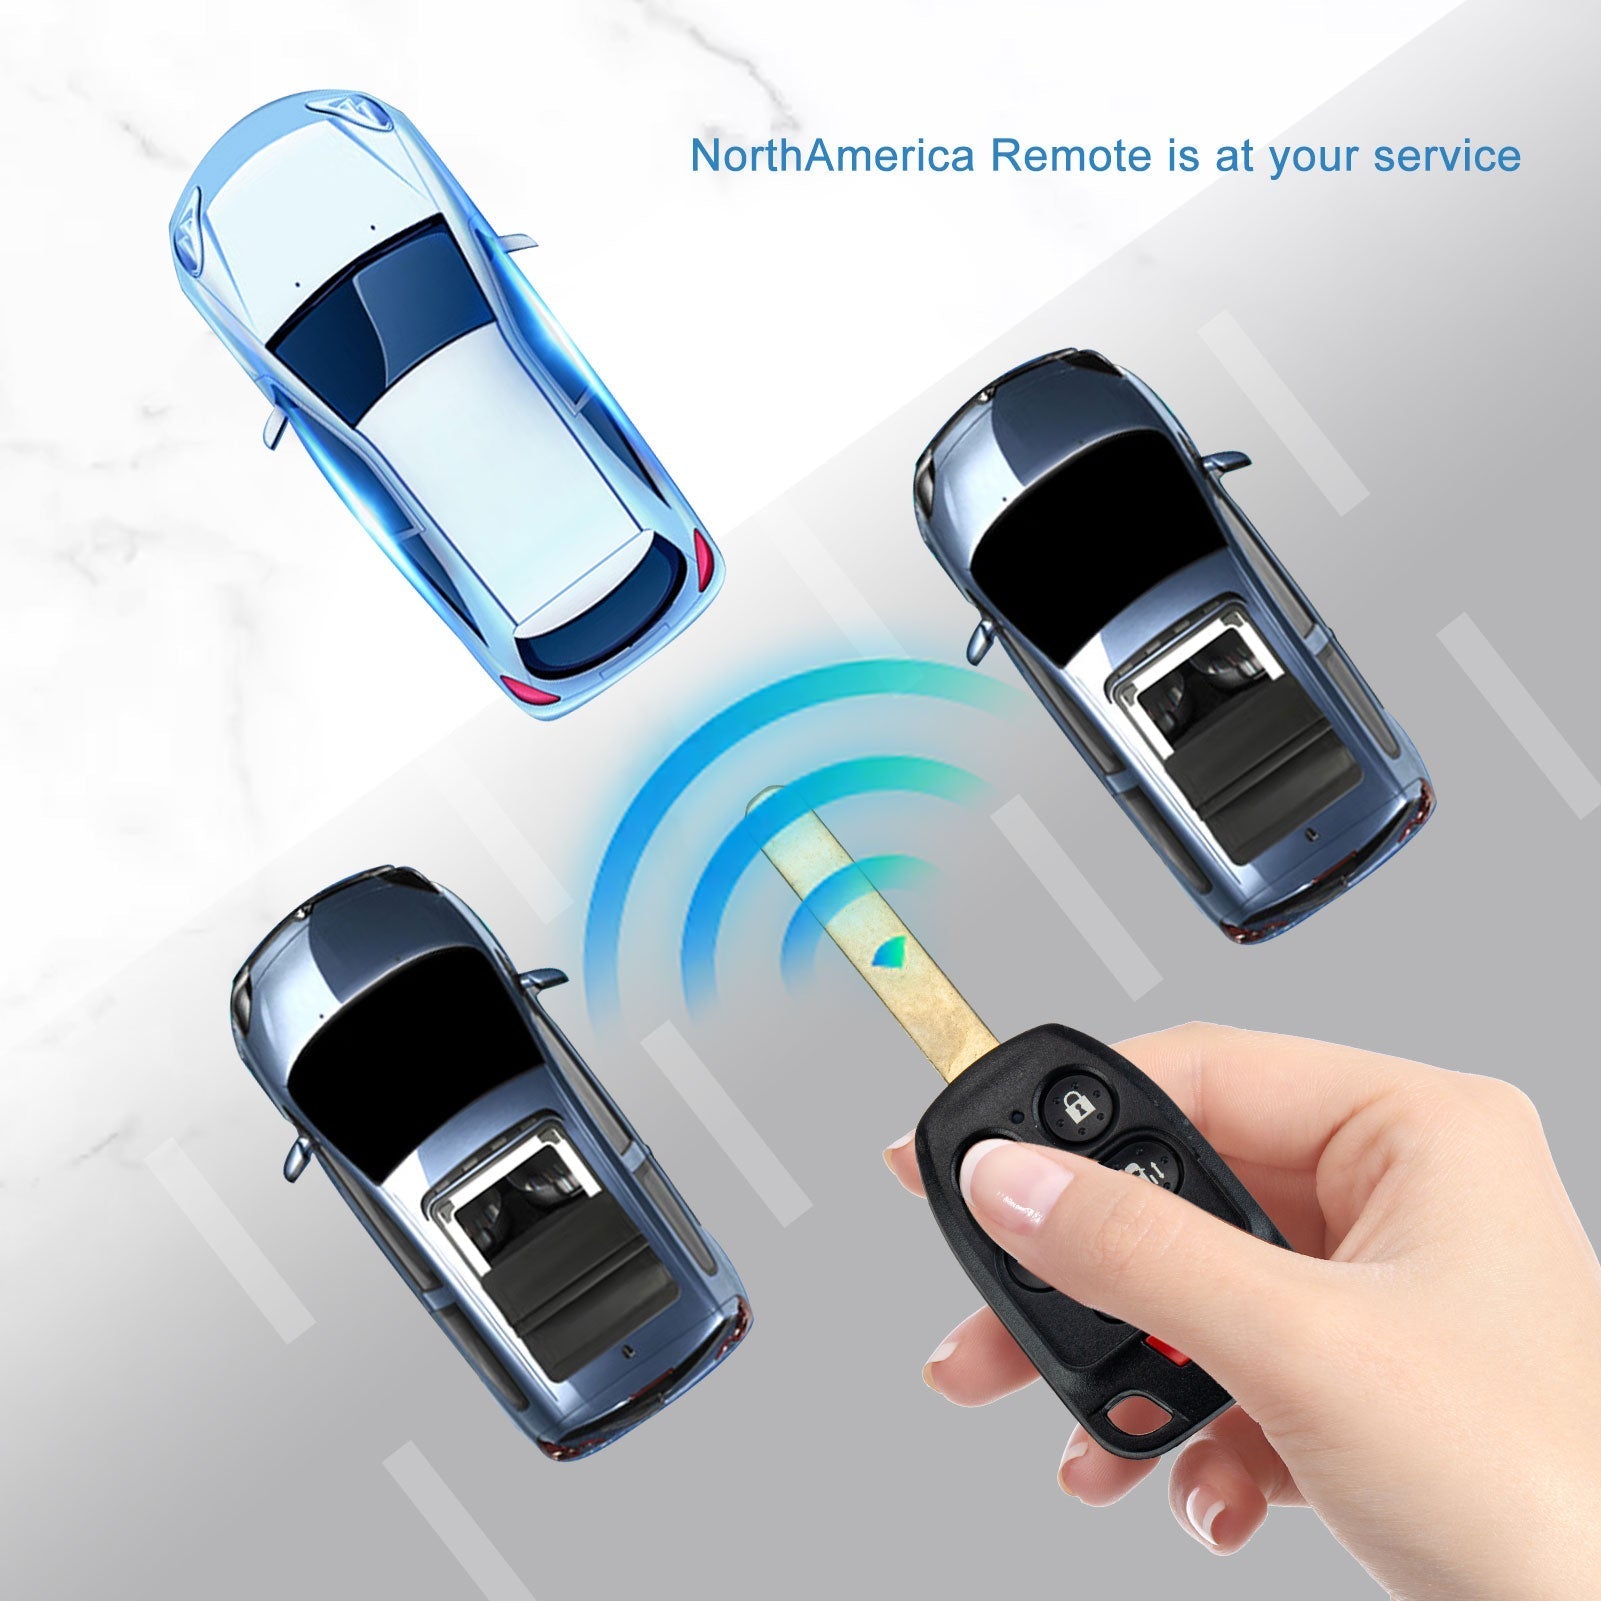 6 BTN Car Key Fob Keyless Entry Remote fit for 2011 - 2014 Honda Odyssey N5F-A04TAA